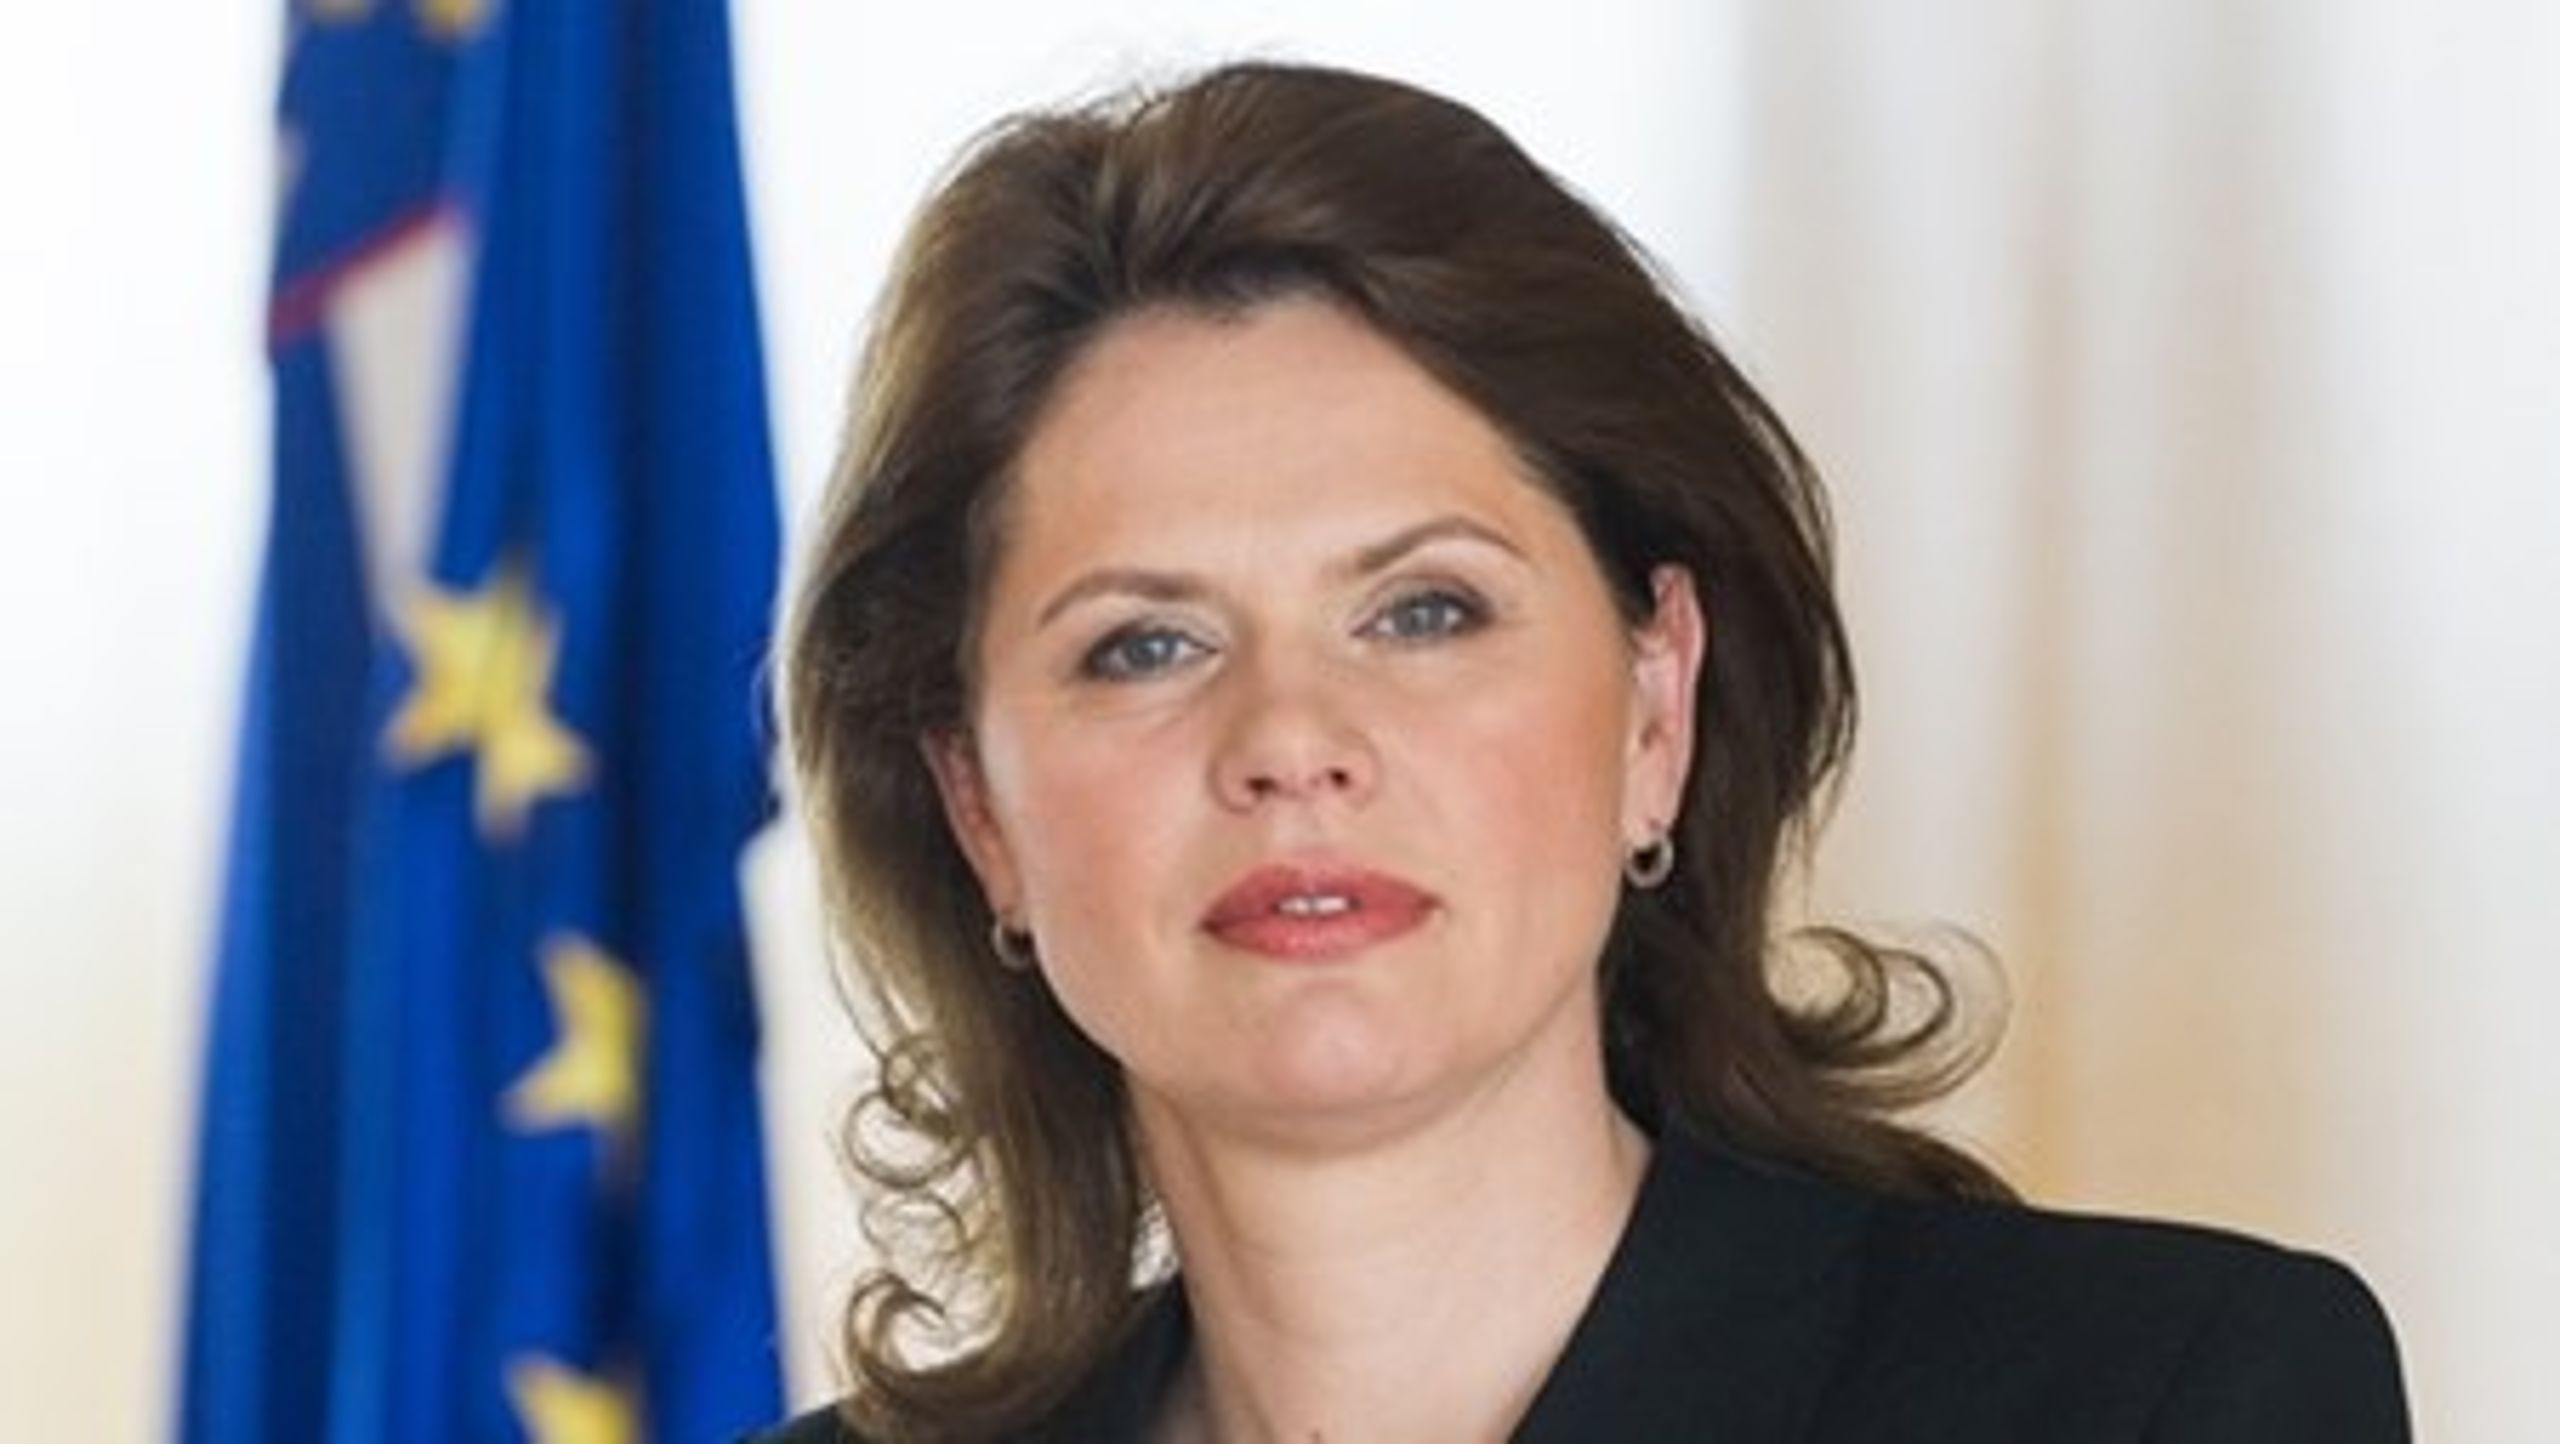 Slovenske Alenka Bratušek er udpeget som vicepræsident for Europa-Kommissionen med energiunion som arbejdsfelt.